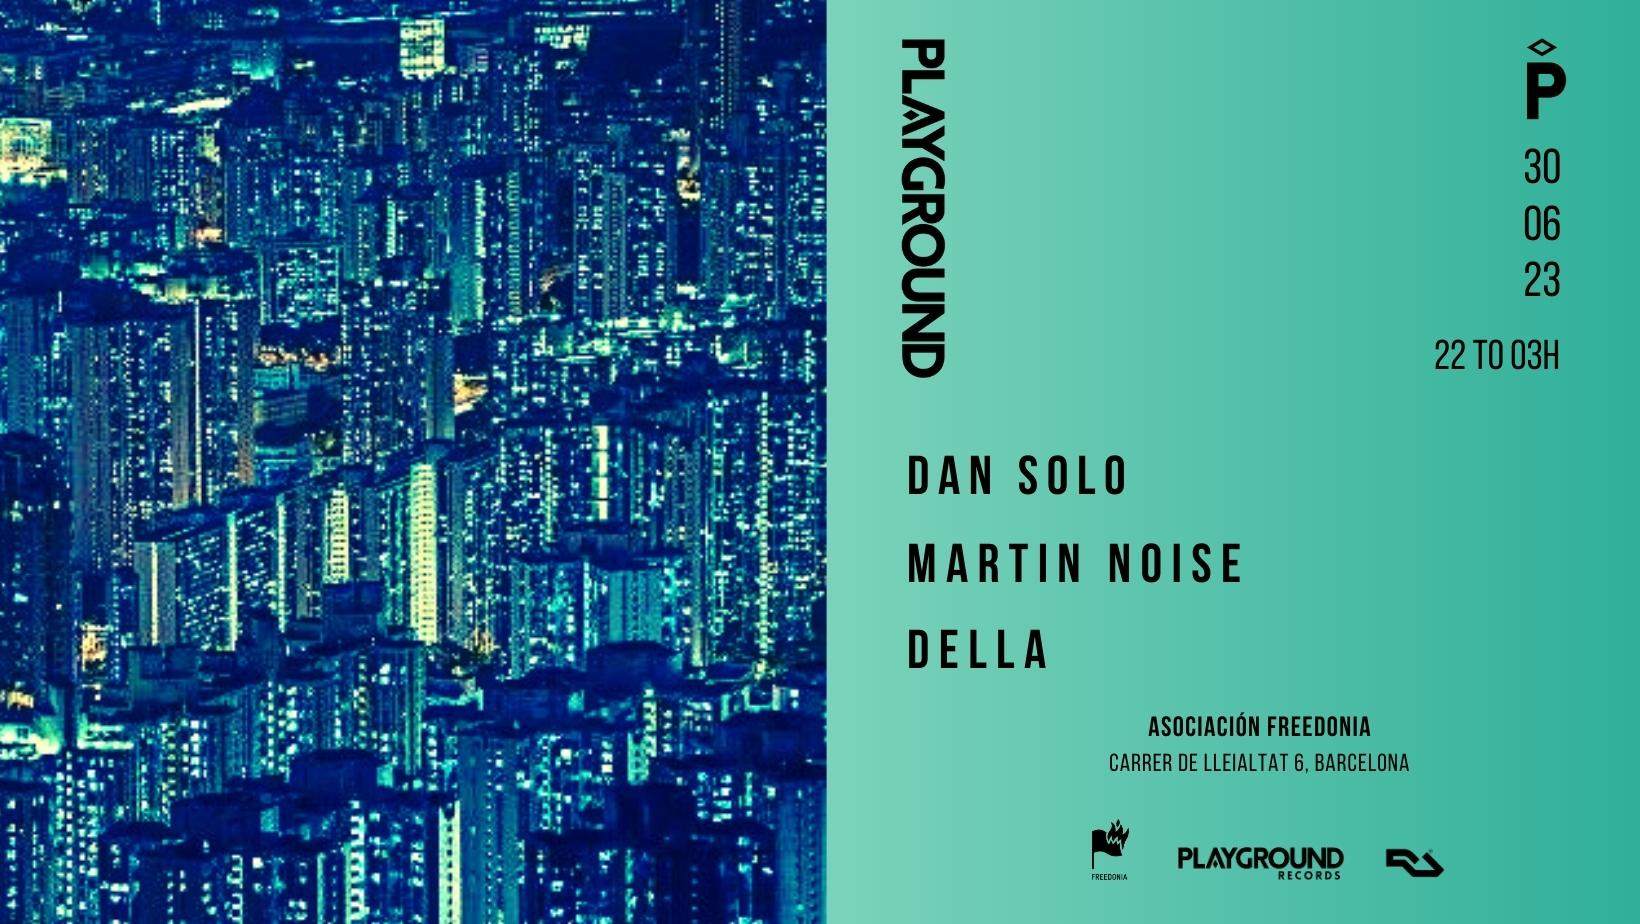 Playground with Dan Solo + Martin Noise + DELLA - フライヤー裏